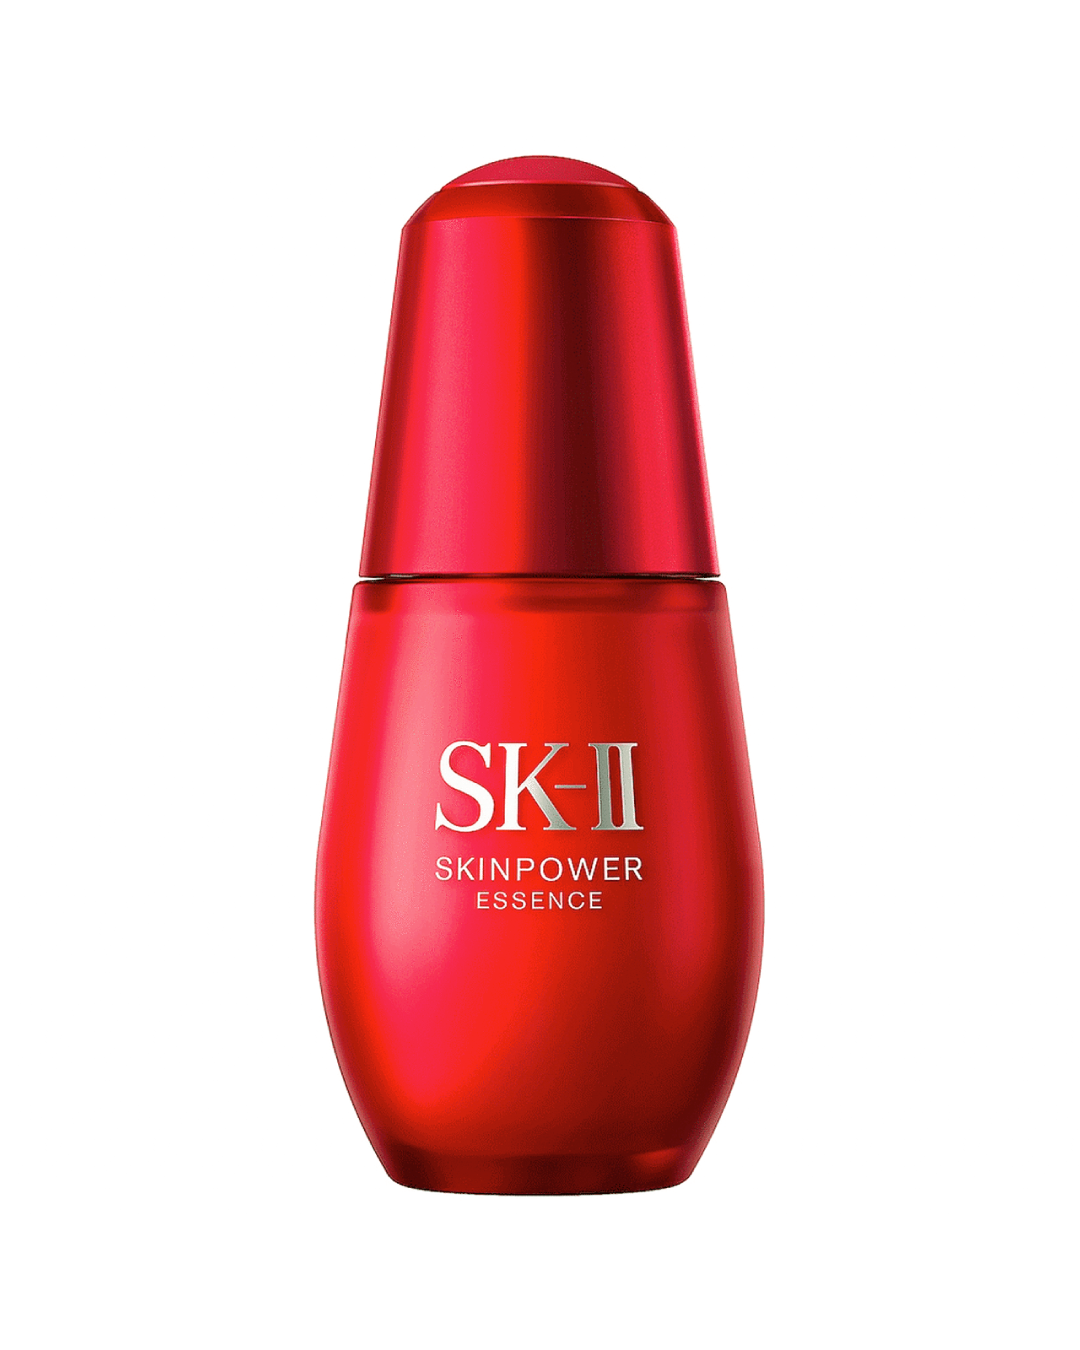 SK-II Skinpower Essence (30ml) - Best Buy World Philippines